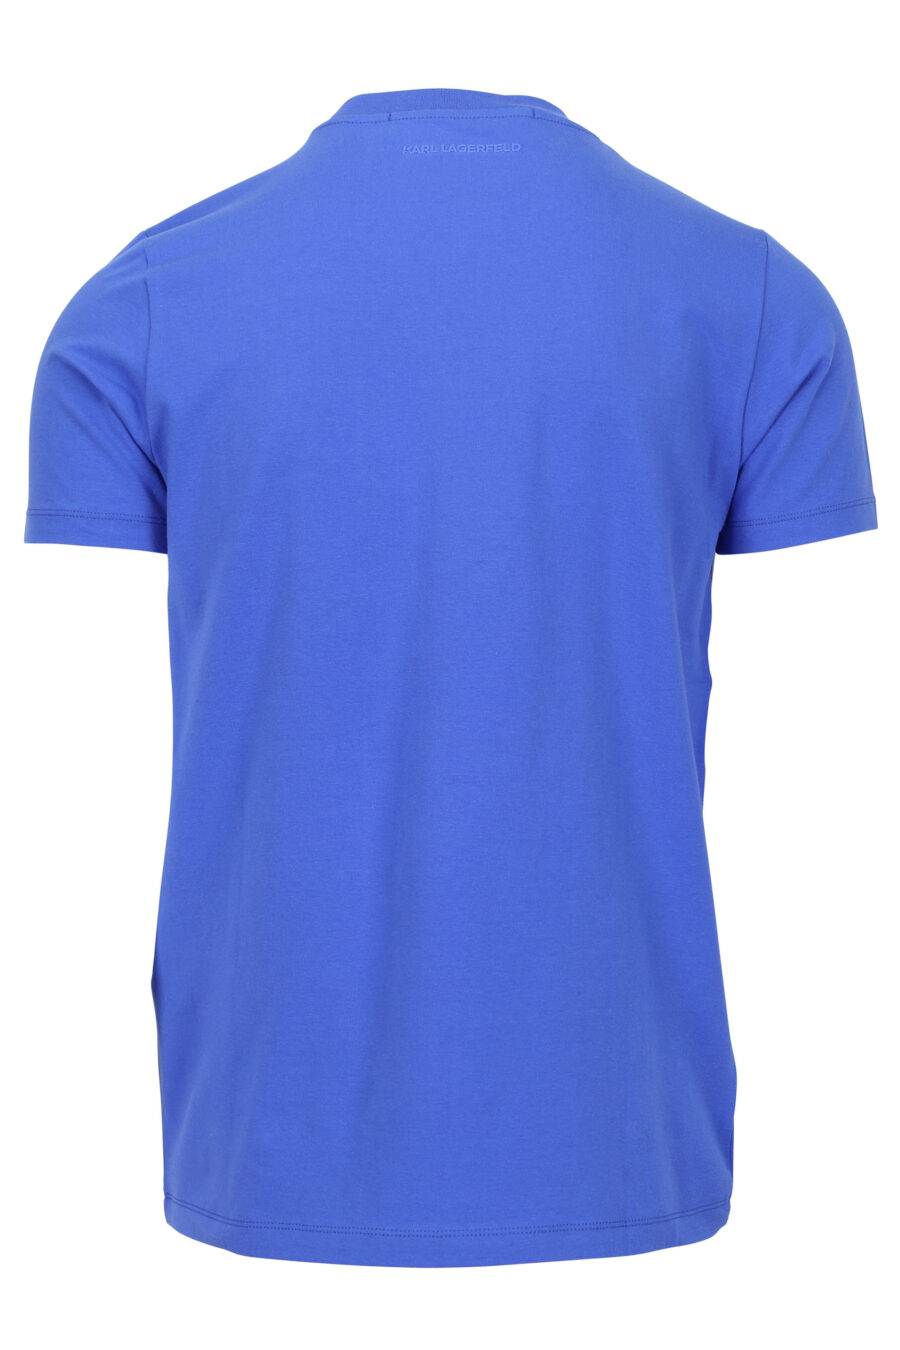 Camiseta azul con minilogo placa - 4062226959216 1